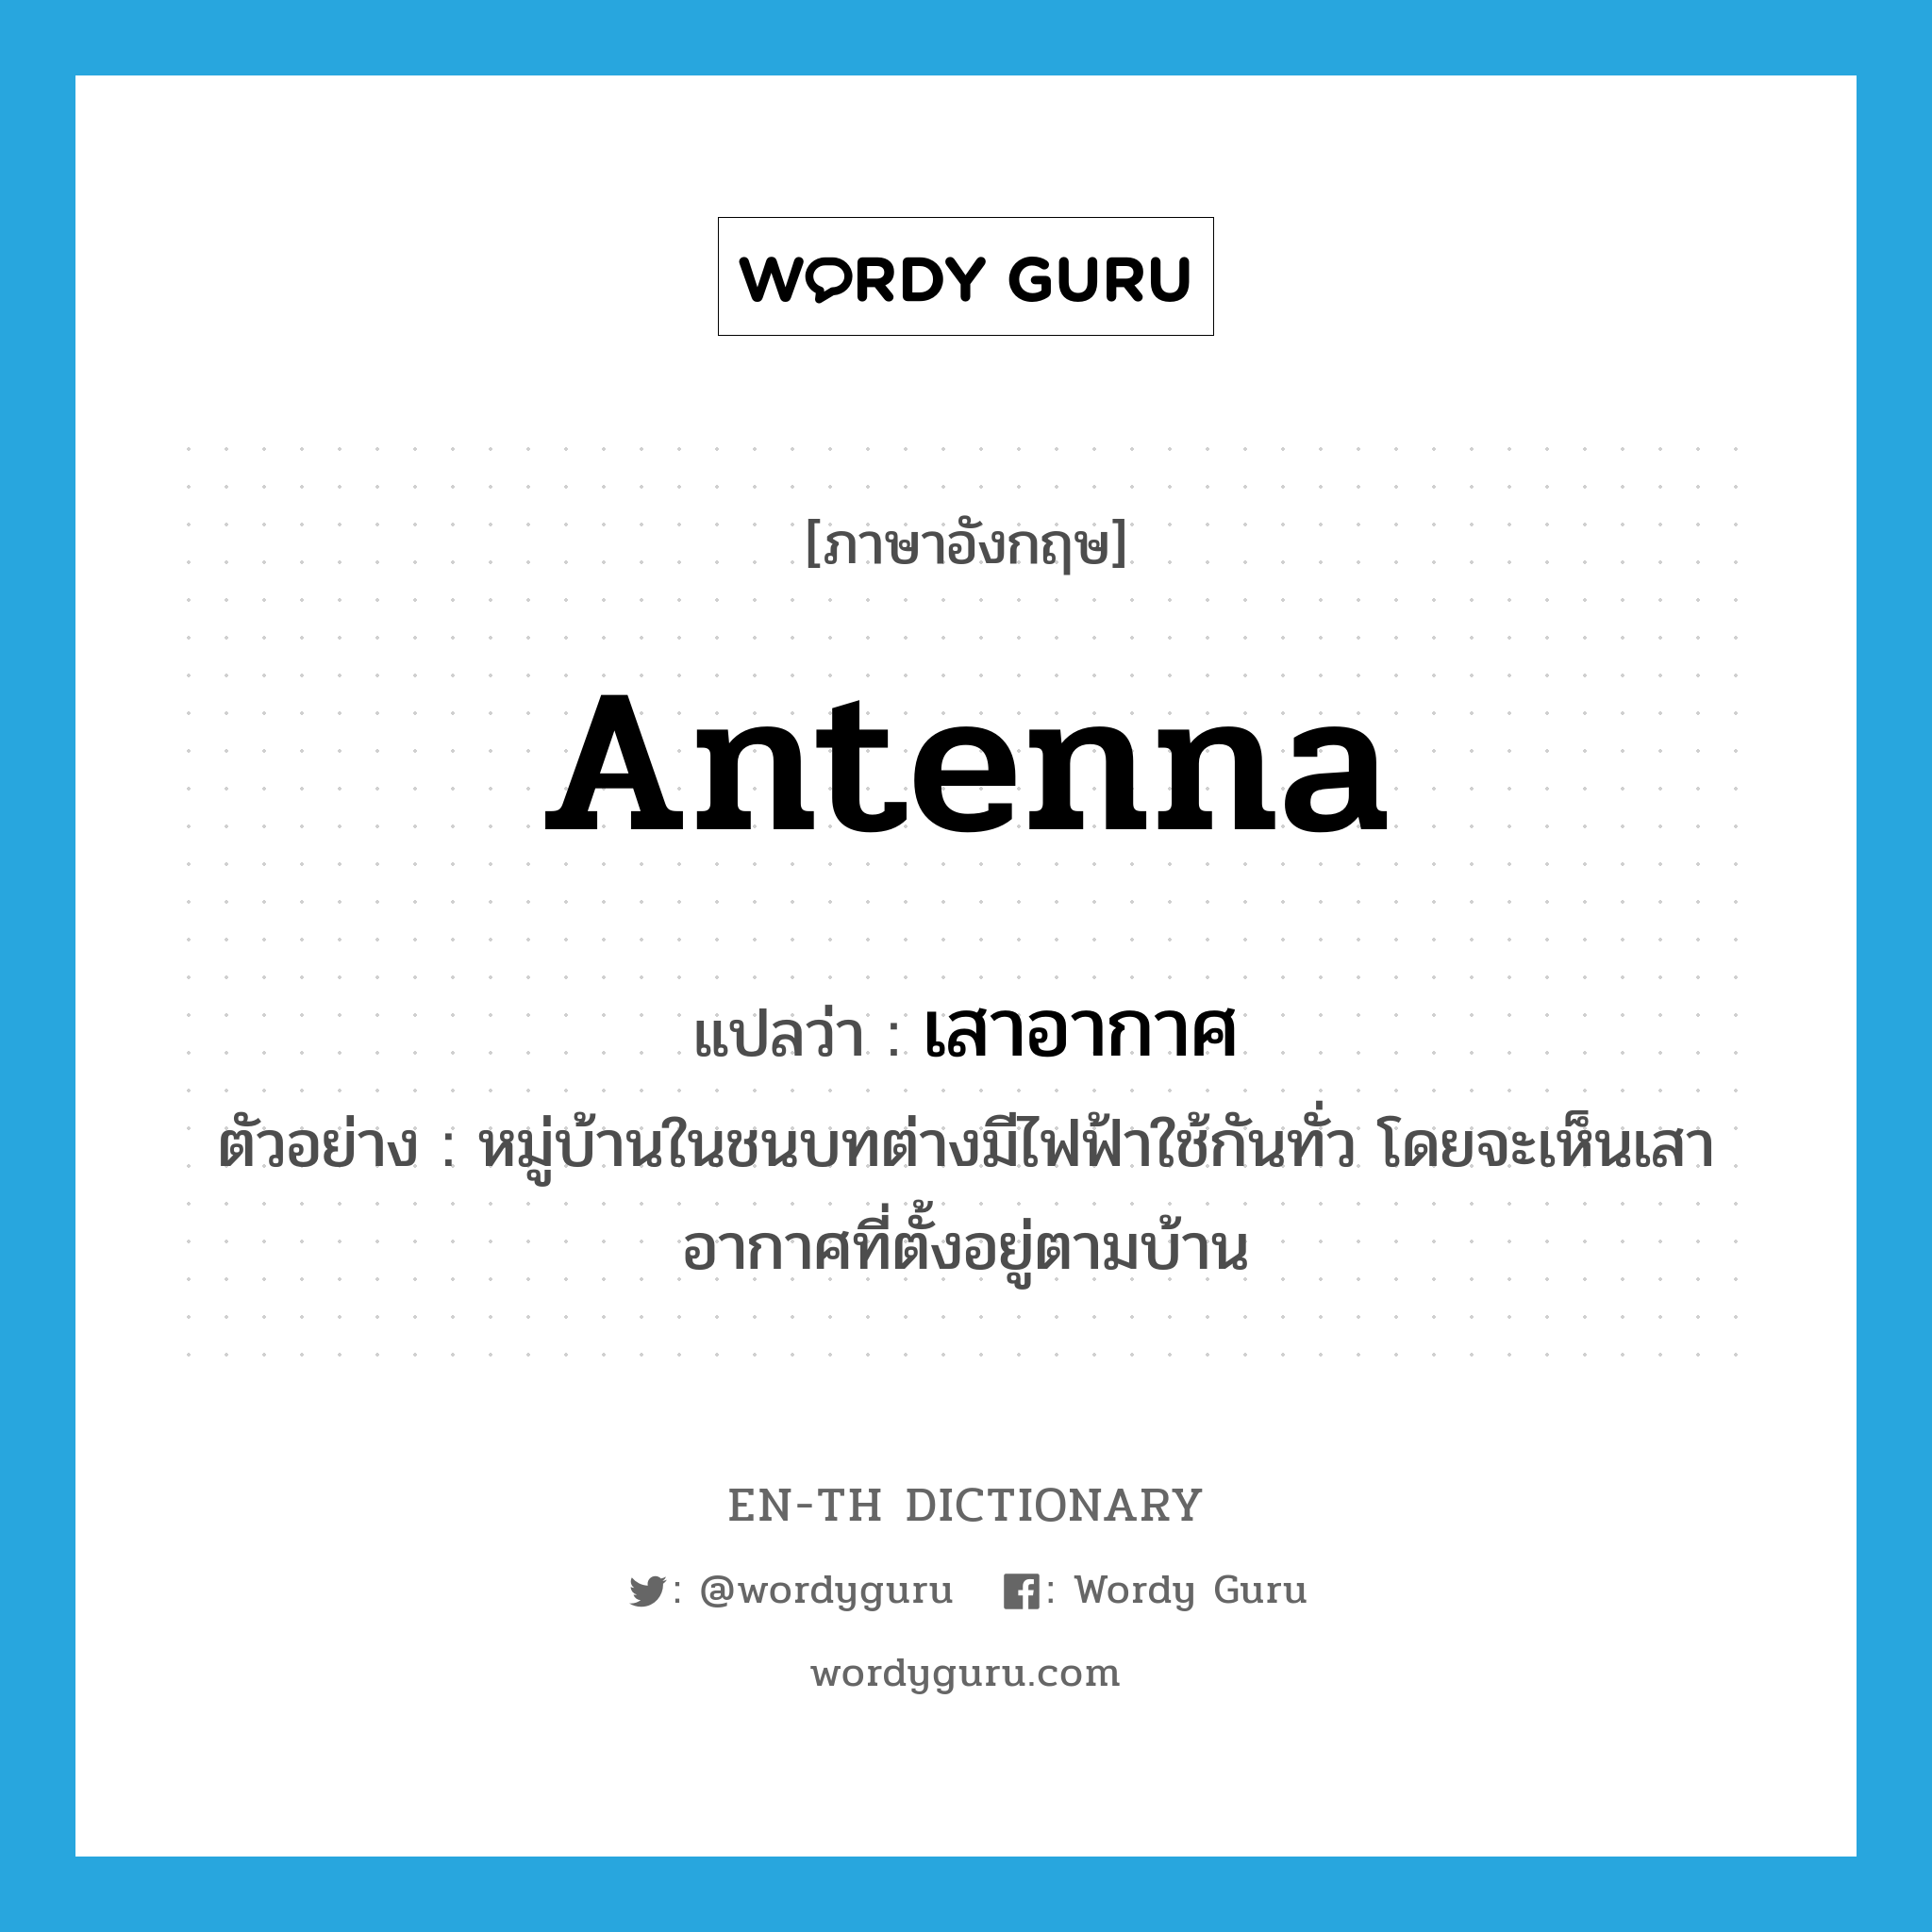 antenna แปลว่า?, คำศัพท์ภาษาอังกฤษ antenna แปลว่า เสาอากาศ ประเภท N ตัวอย่าง หมู่บ้านในชนบทต่างมีไฟฟ้าใช้กันทั่ว โดยจะเห็นเสาอากาศที่ตั้งอยู่ตามบ้าน หมวด N